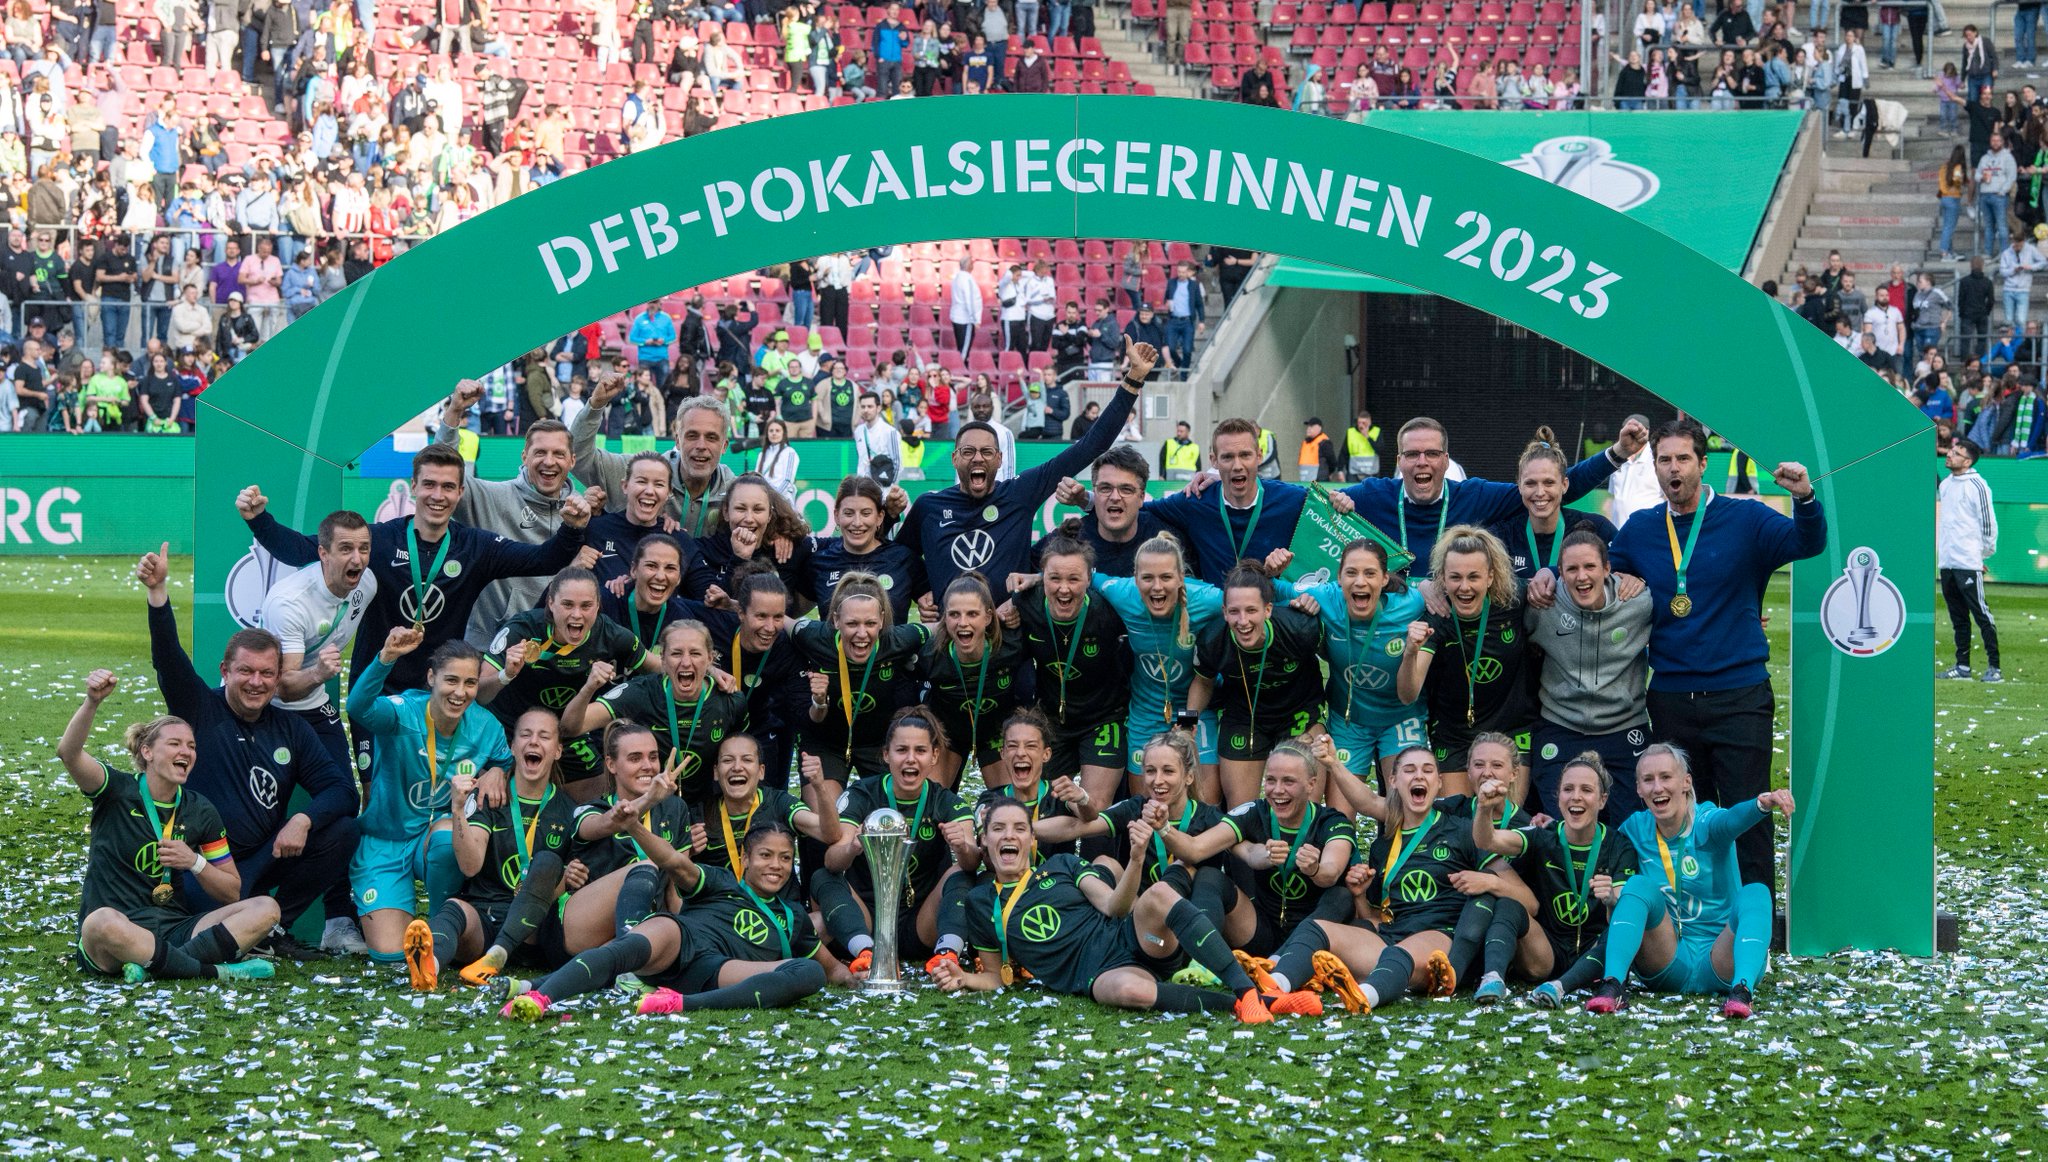 DFB Pokal : Un 10e sacre historique pour Wolfsburg